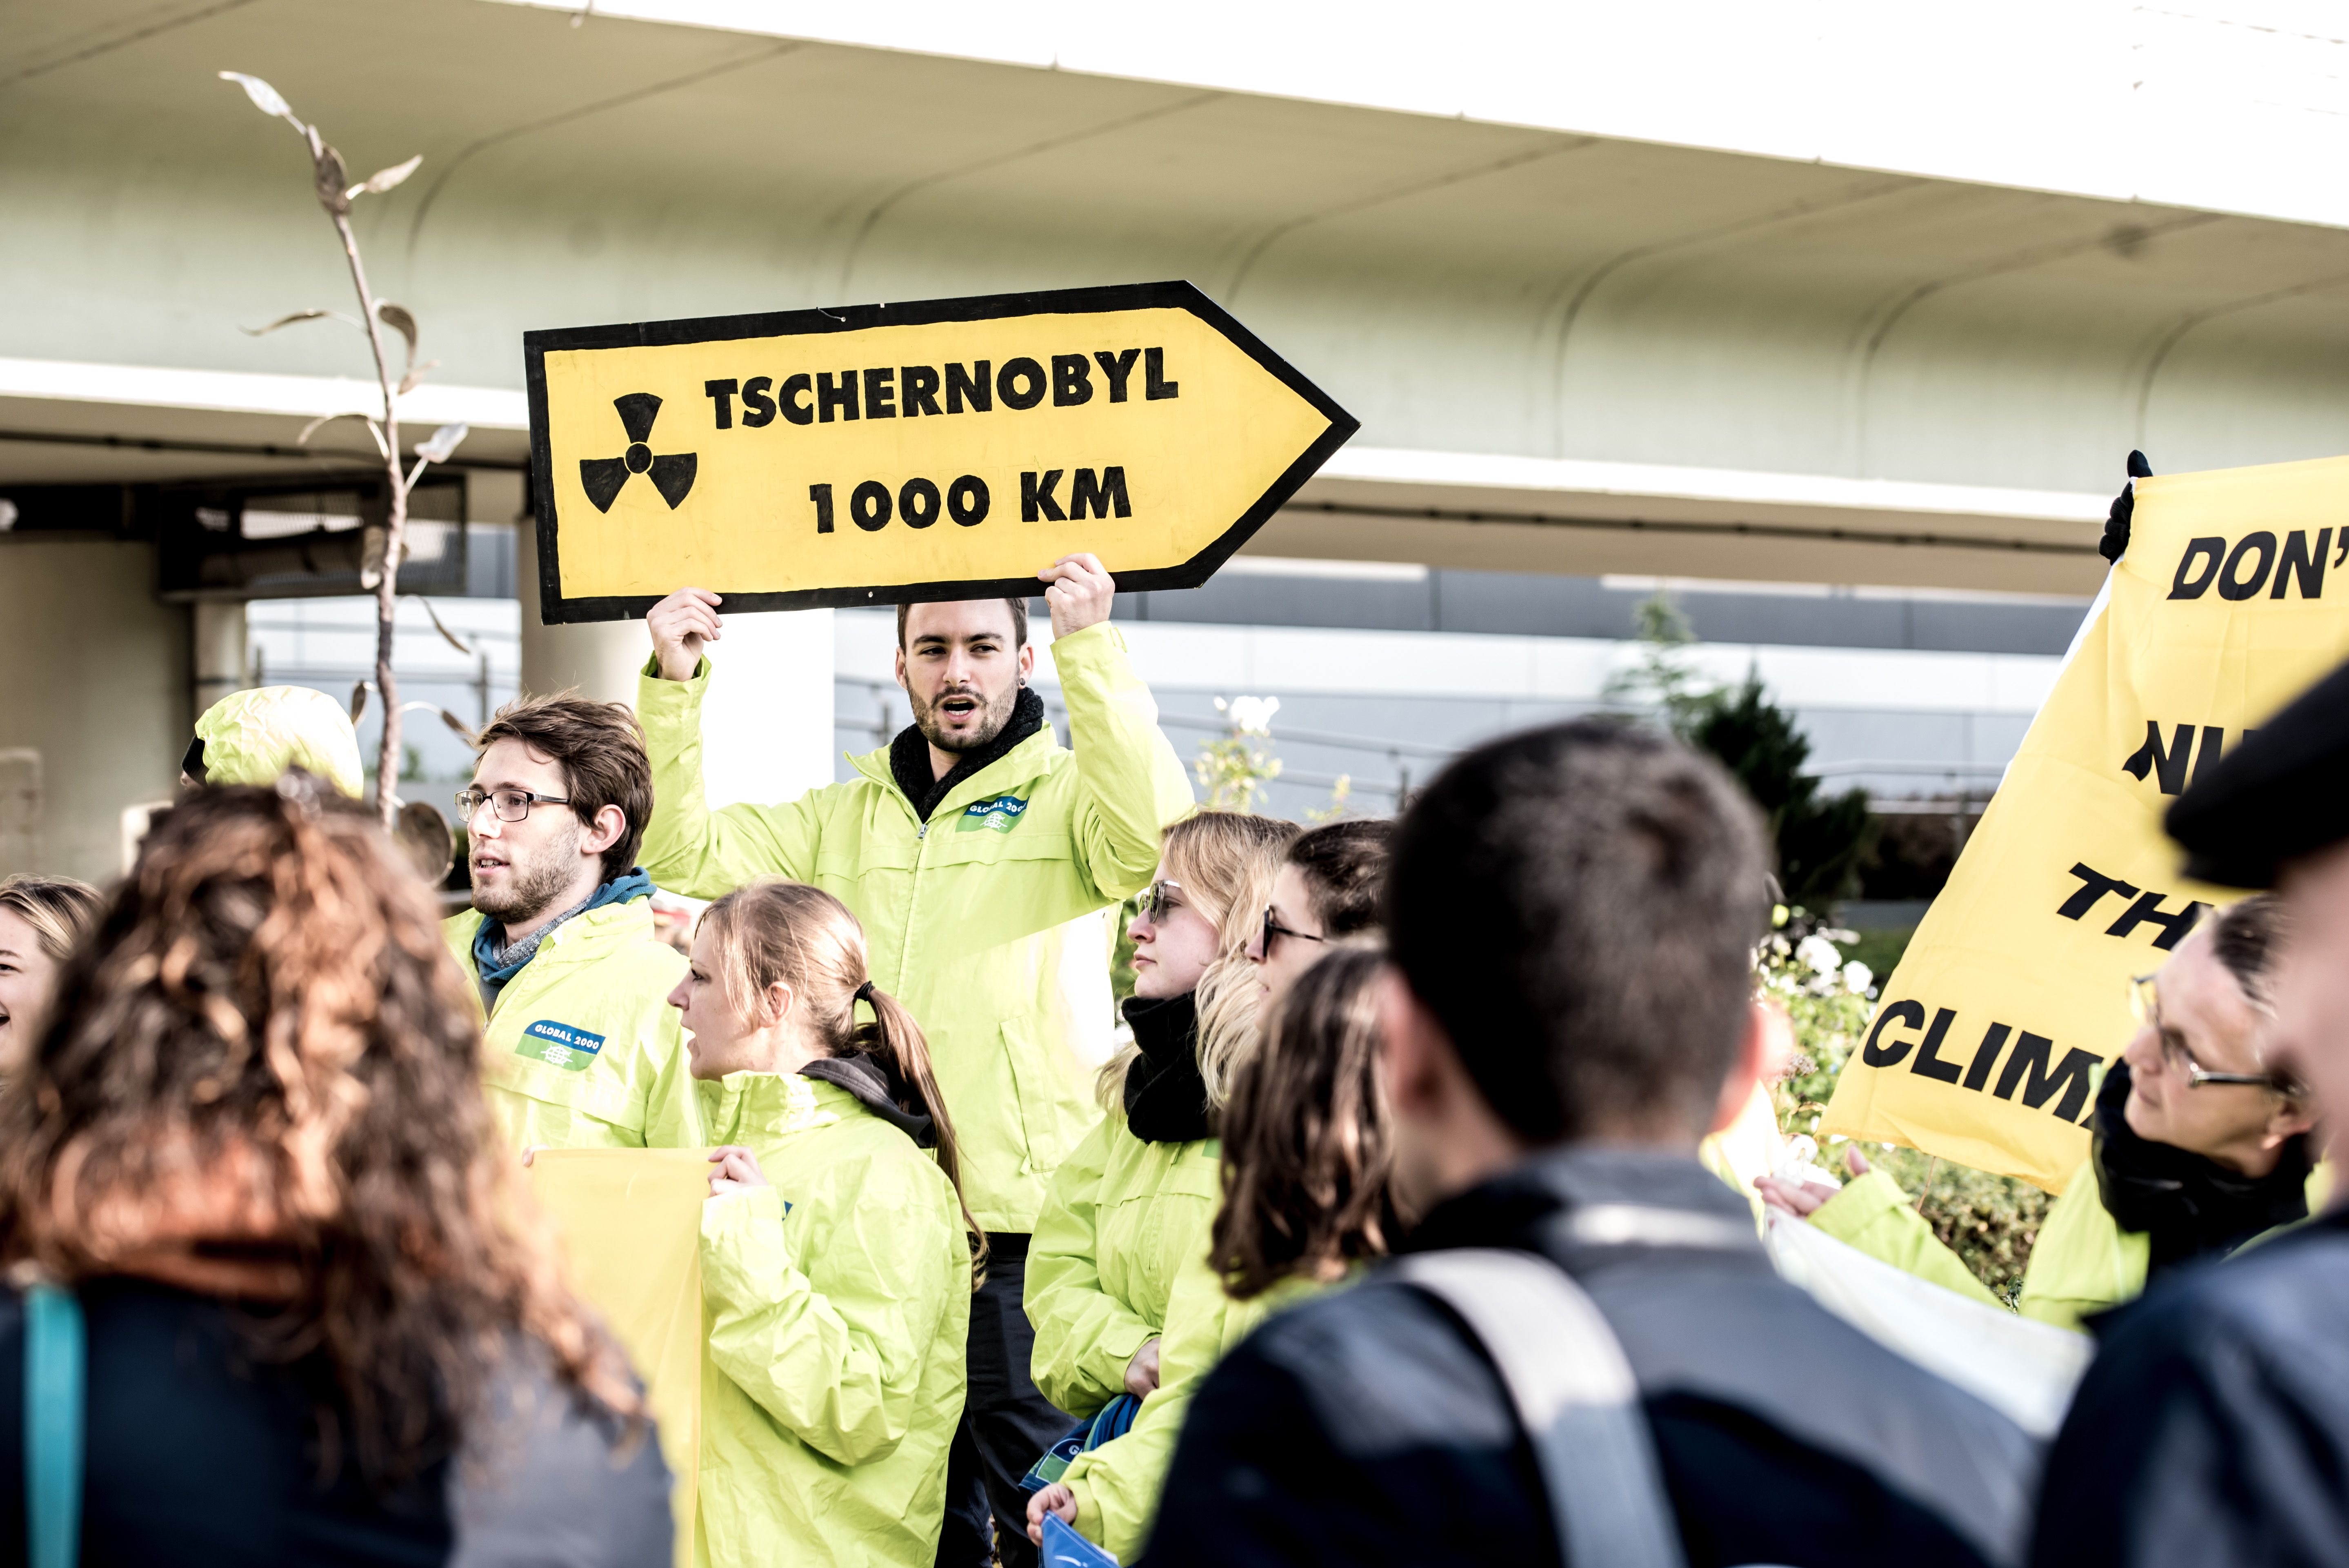 Ein Demonstrant steht in einer Gruppe und hält ein gelb-schwarzes Schild hoch, dass einem Straßenschild ähnelt. Darauf steht: Tschernobyl 1000 km.